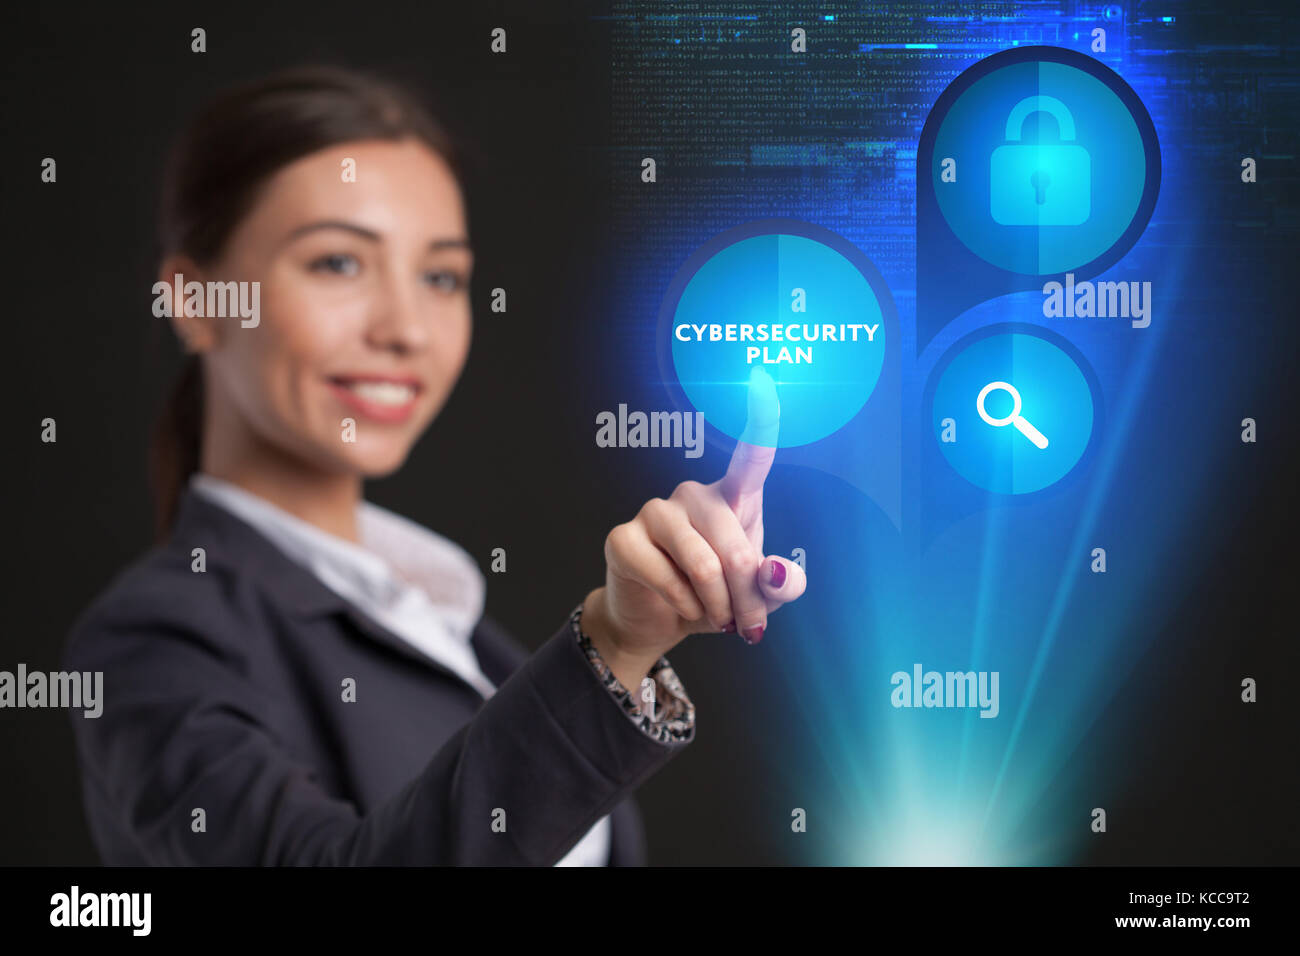 Young businesswoman working in lunettes virtuelle, sélectionnez l'icône sur un plan de cybersécurité de l'écran virtuel, Banque D'Images